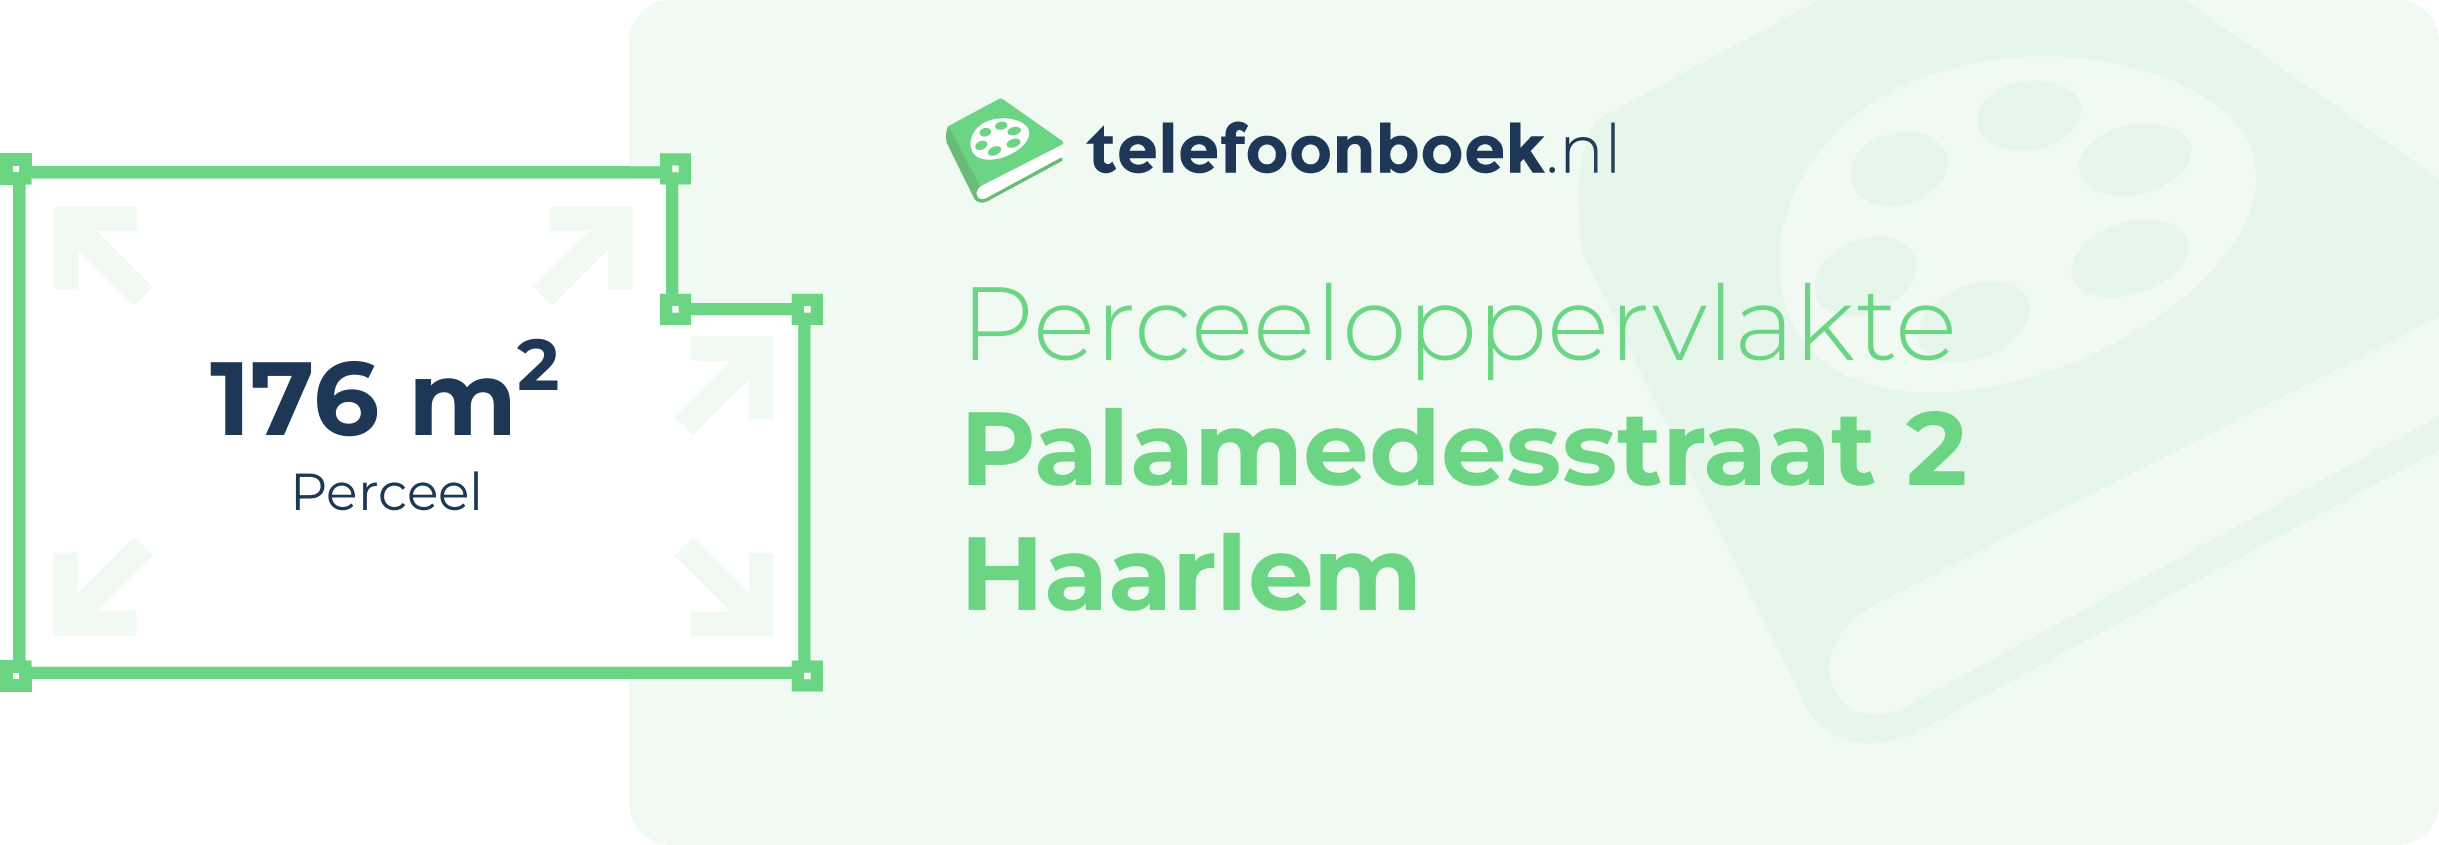 Perceeloppervlakte Palamedesstraat 2 Haarlem